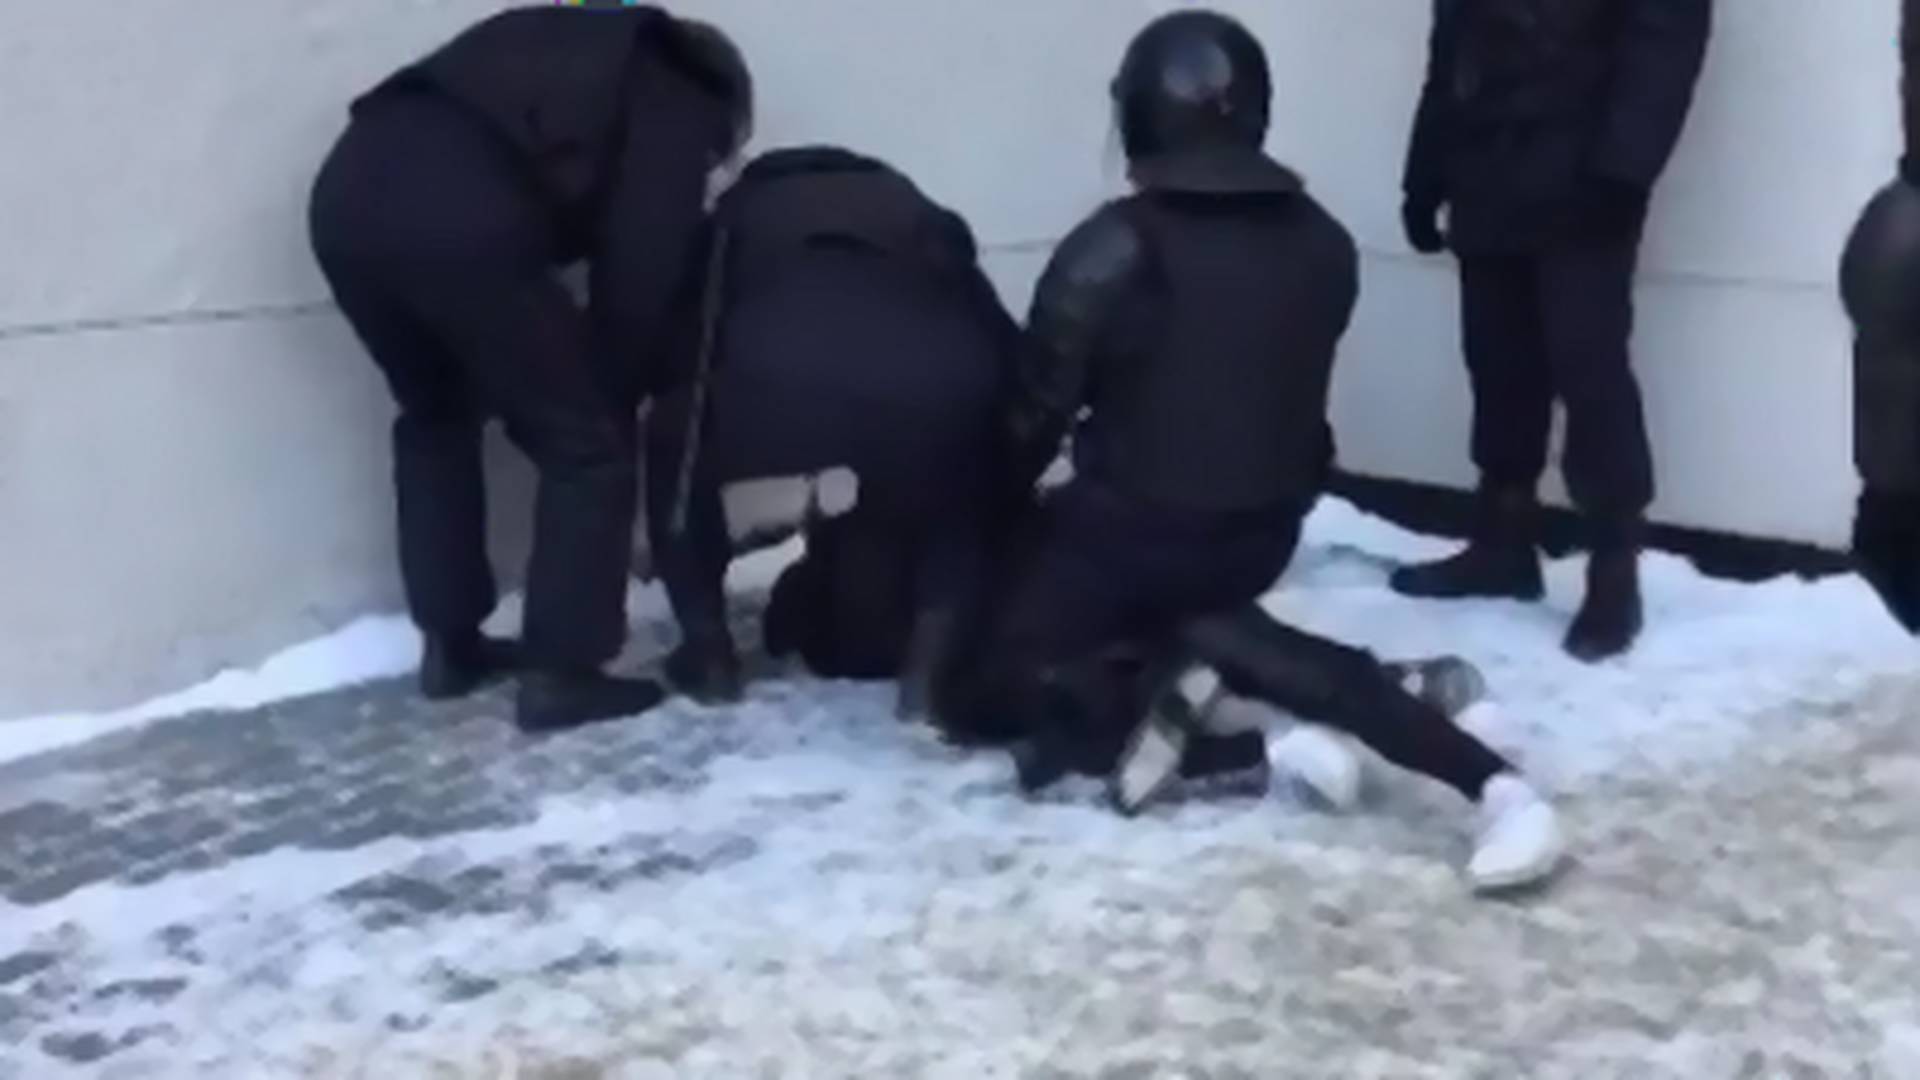 Ne mogu da dišem, pustite me, molim vas: jeziva scena brutalnosti policije sa protesta u Rusiji o kojoj priča ceo svet